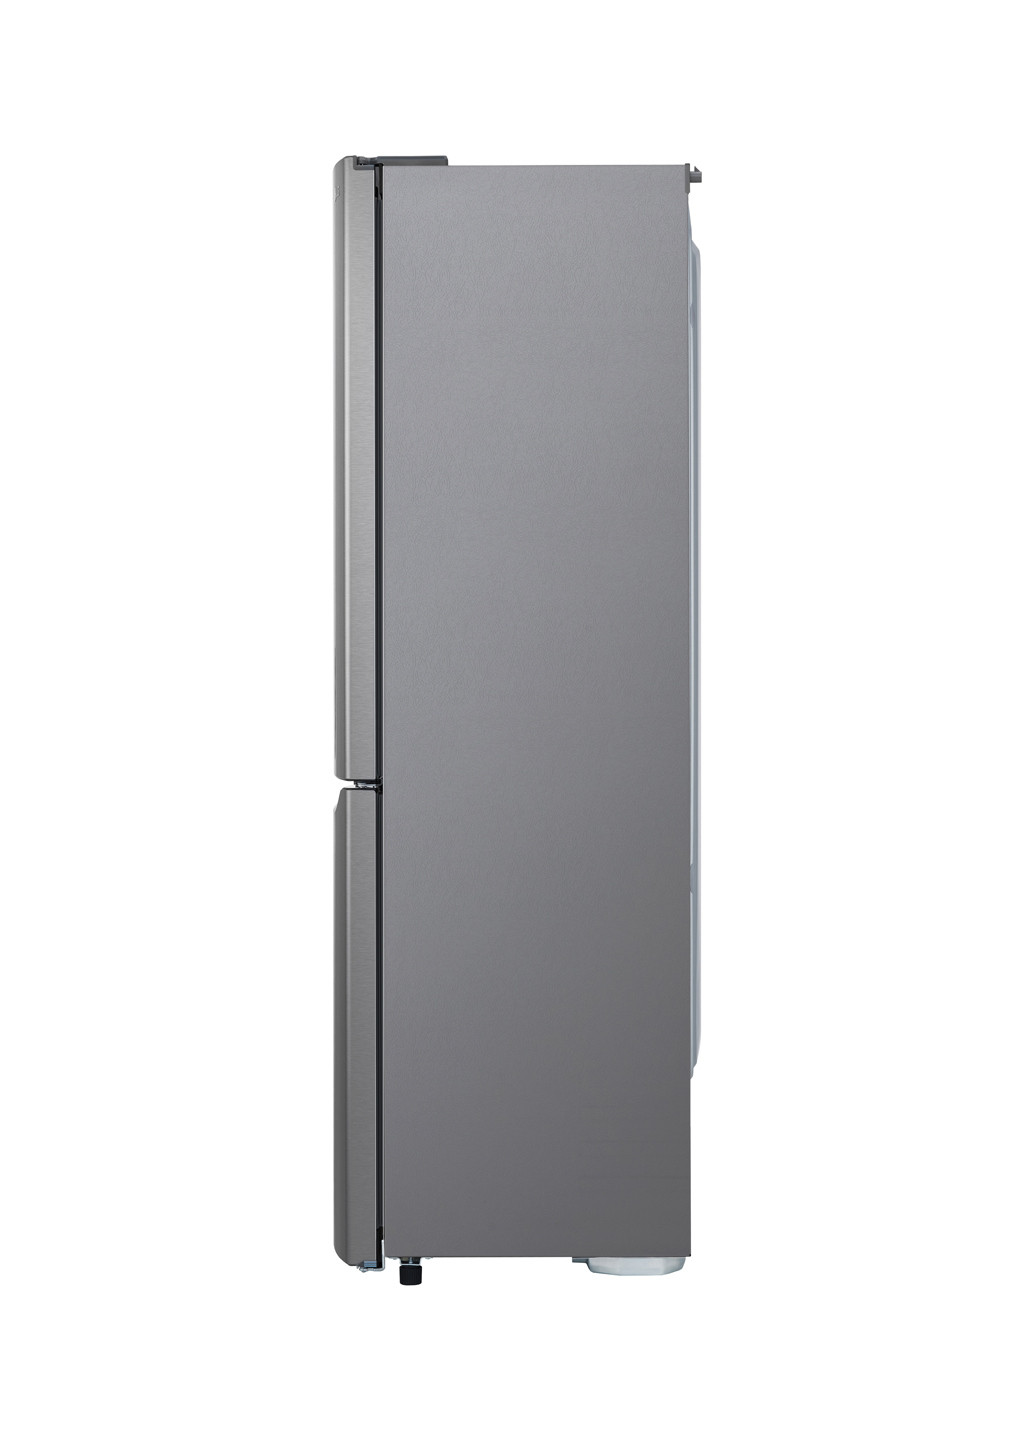 Холодильник LG ga-b419sljl (130358535)